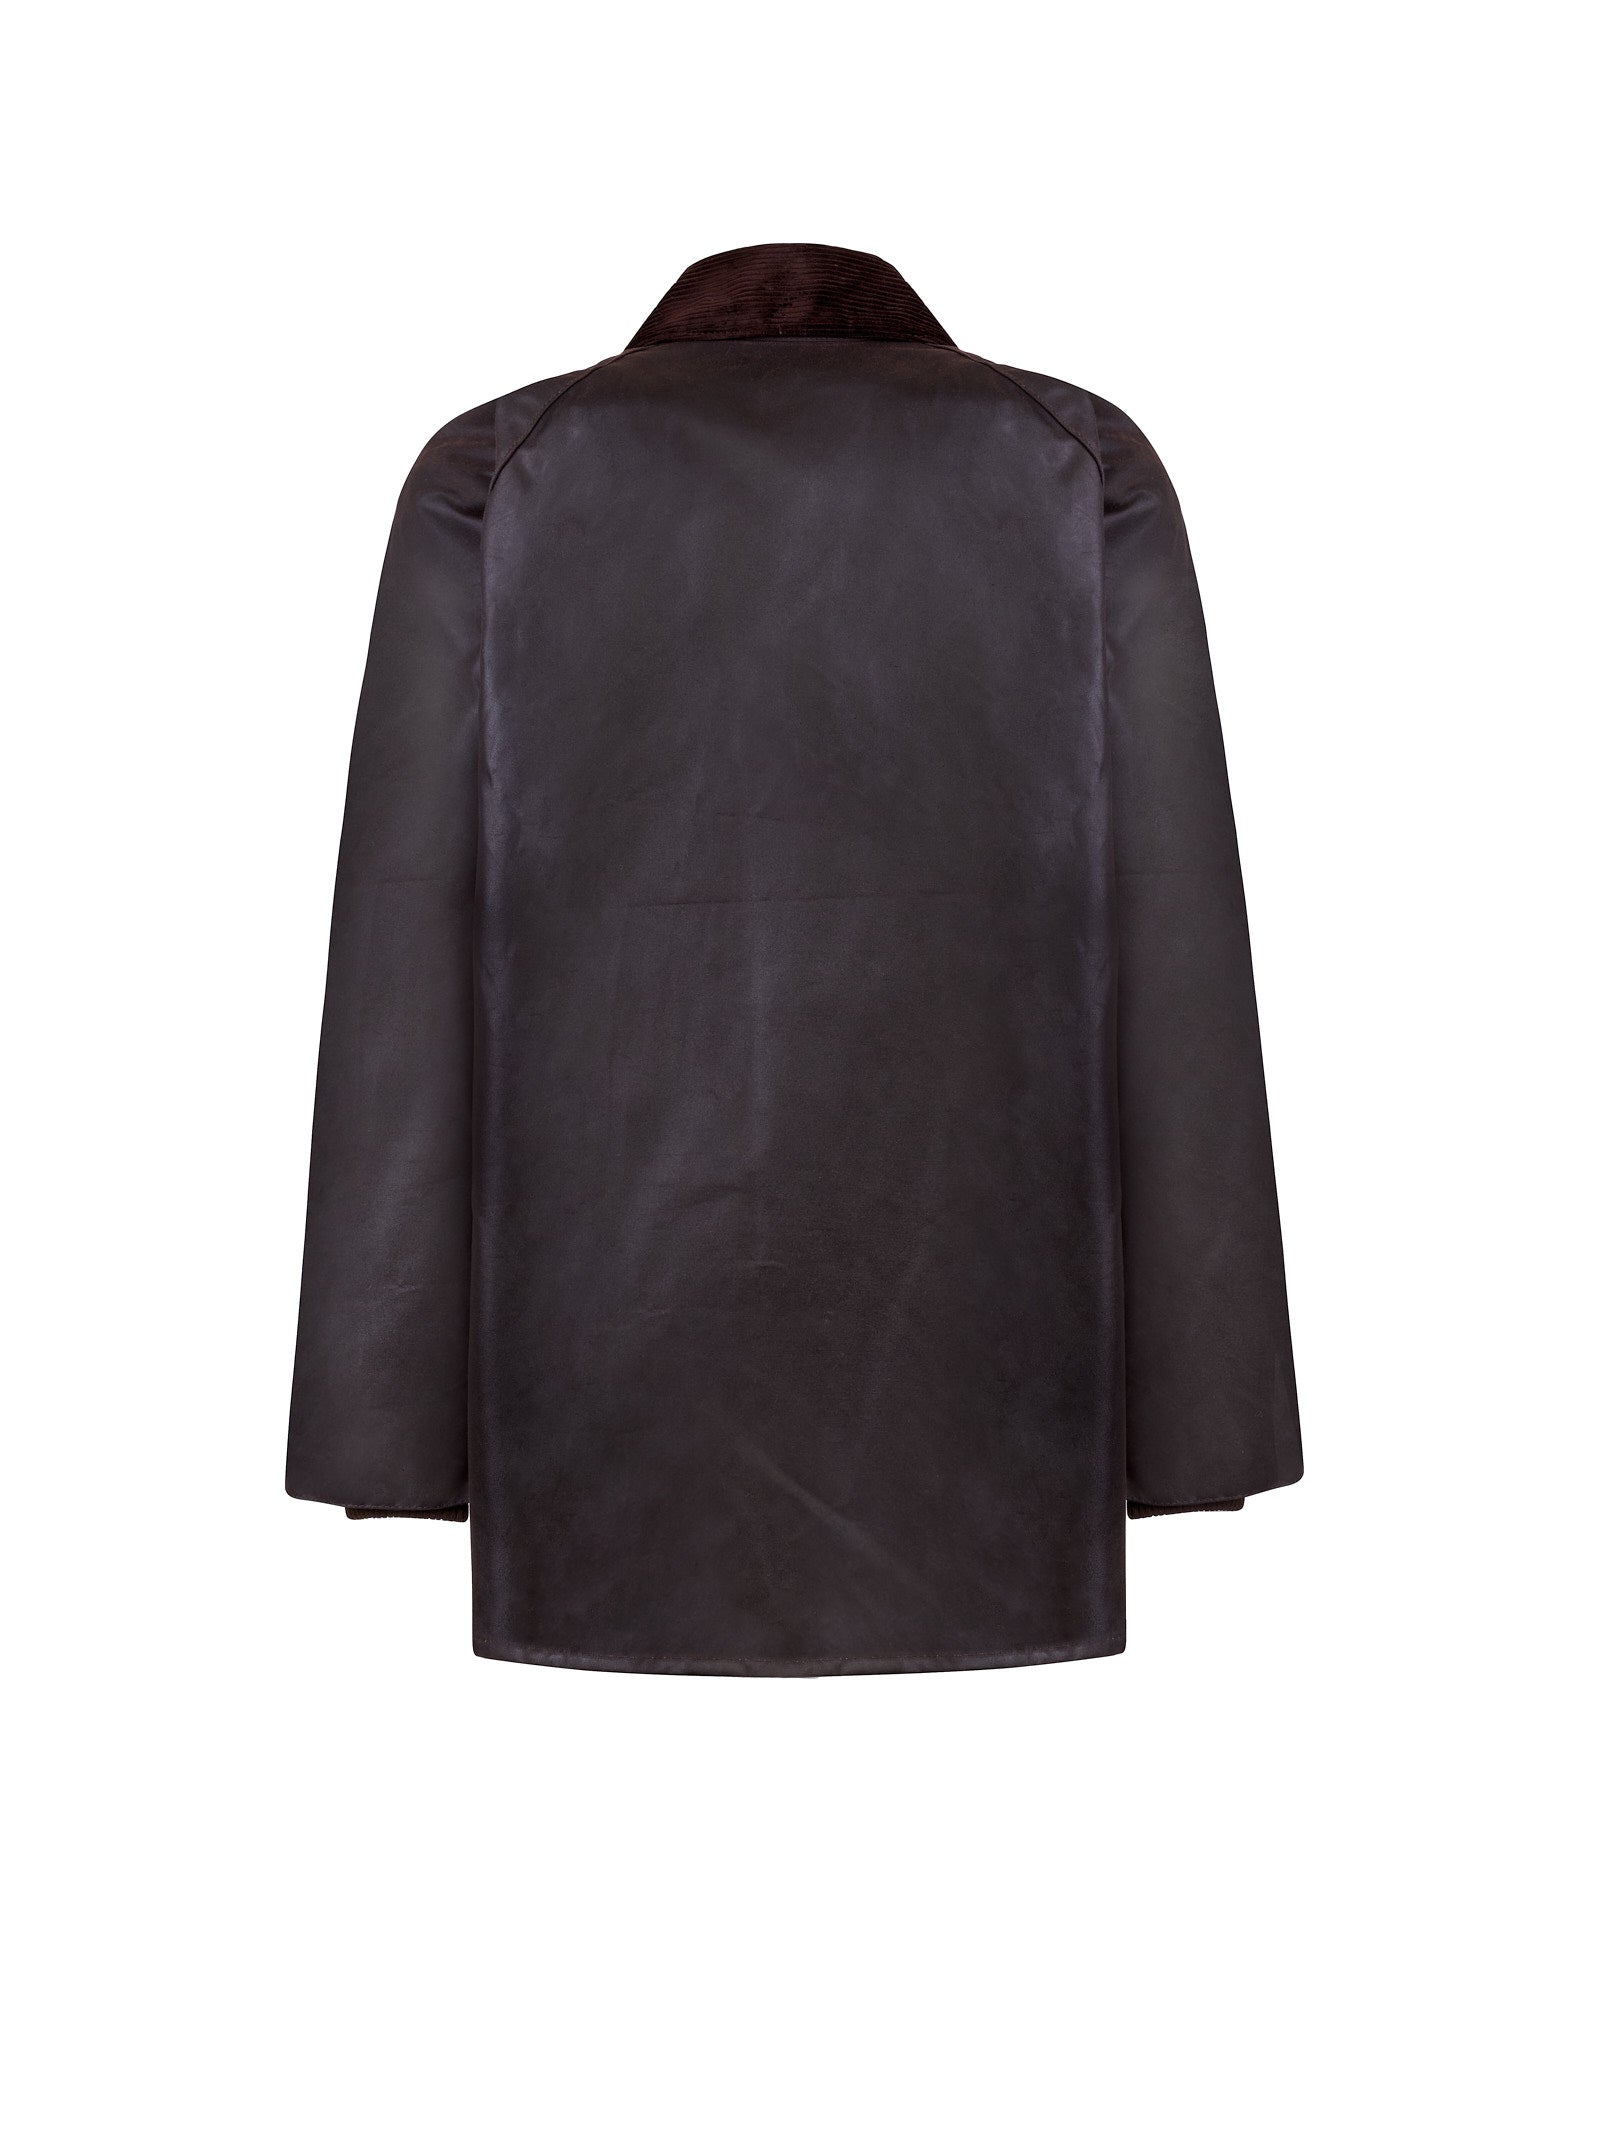 Giubbotto BARBOUR Bedale wax jacket
Rustic